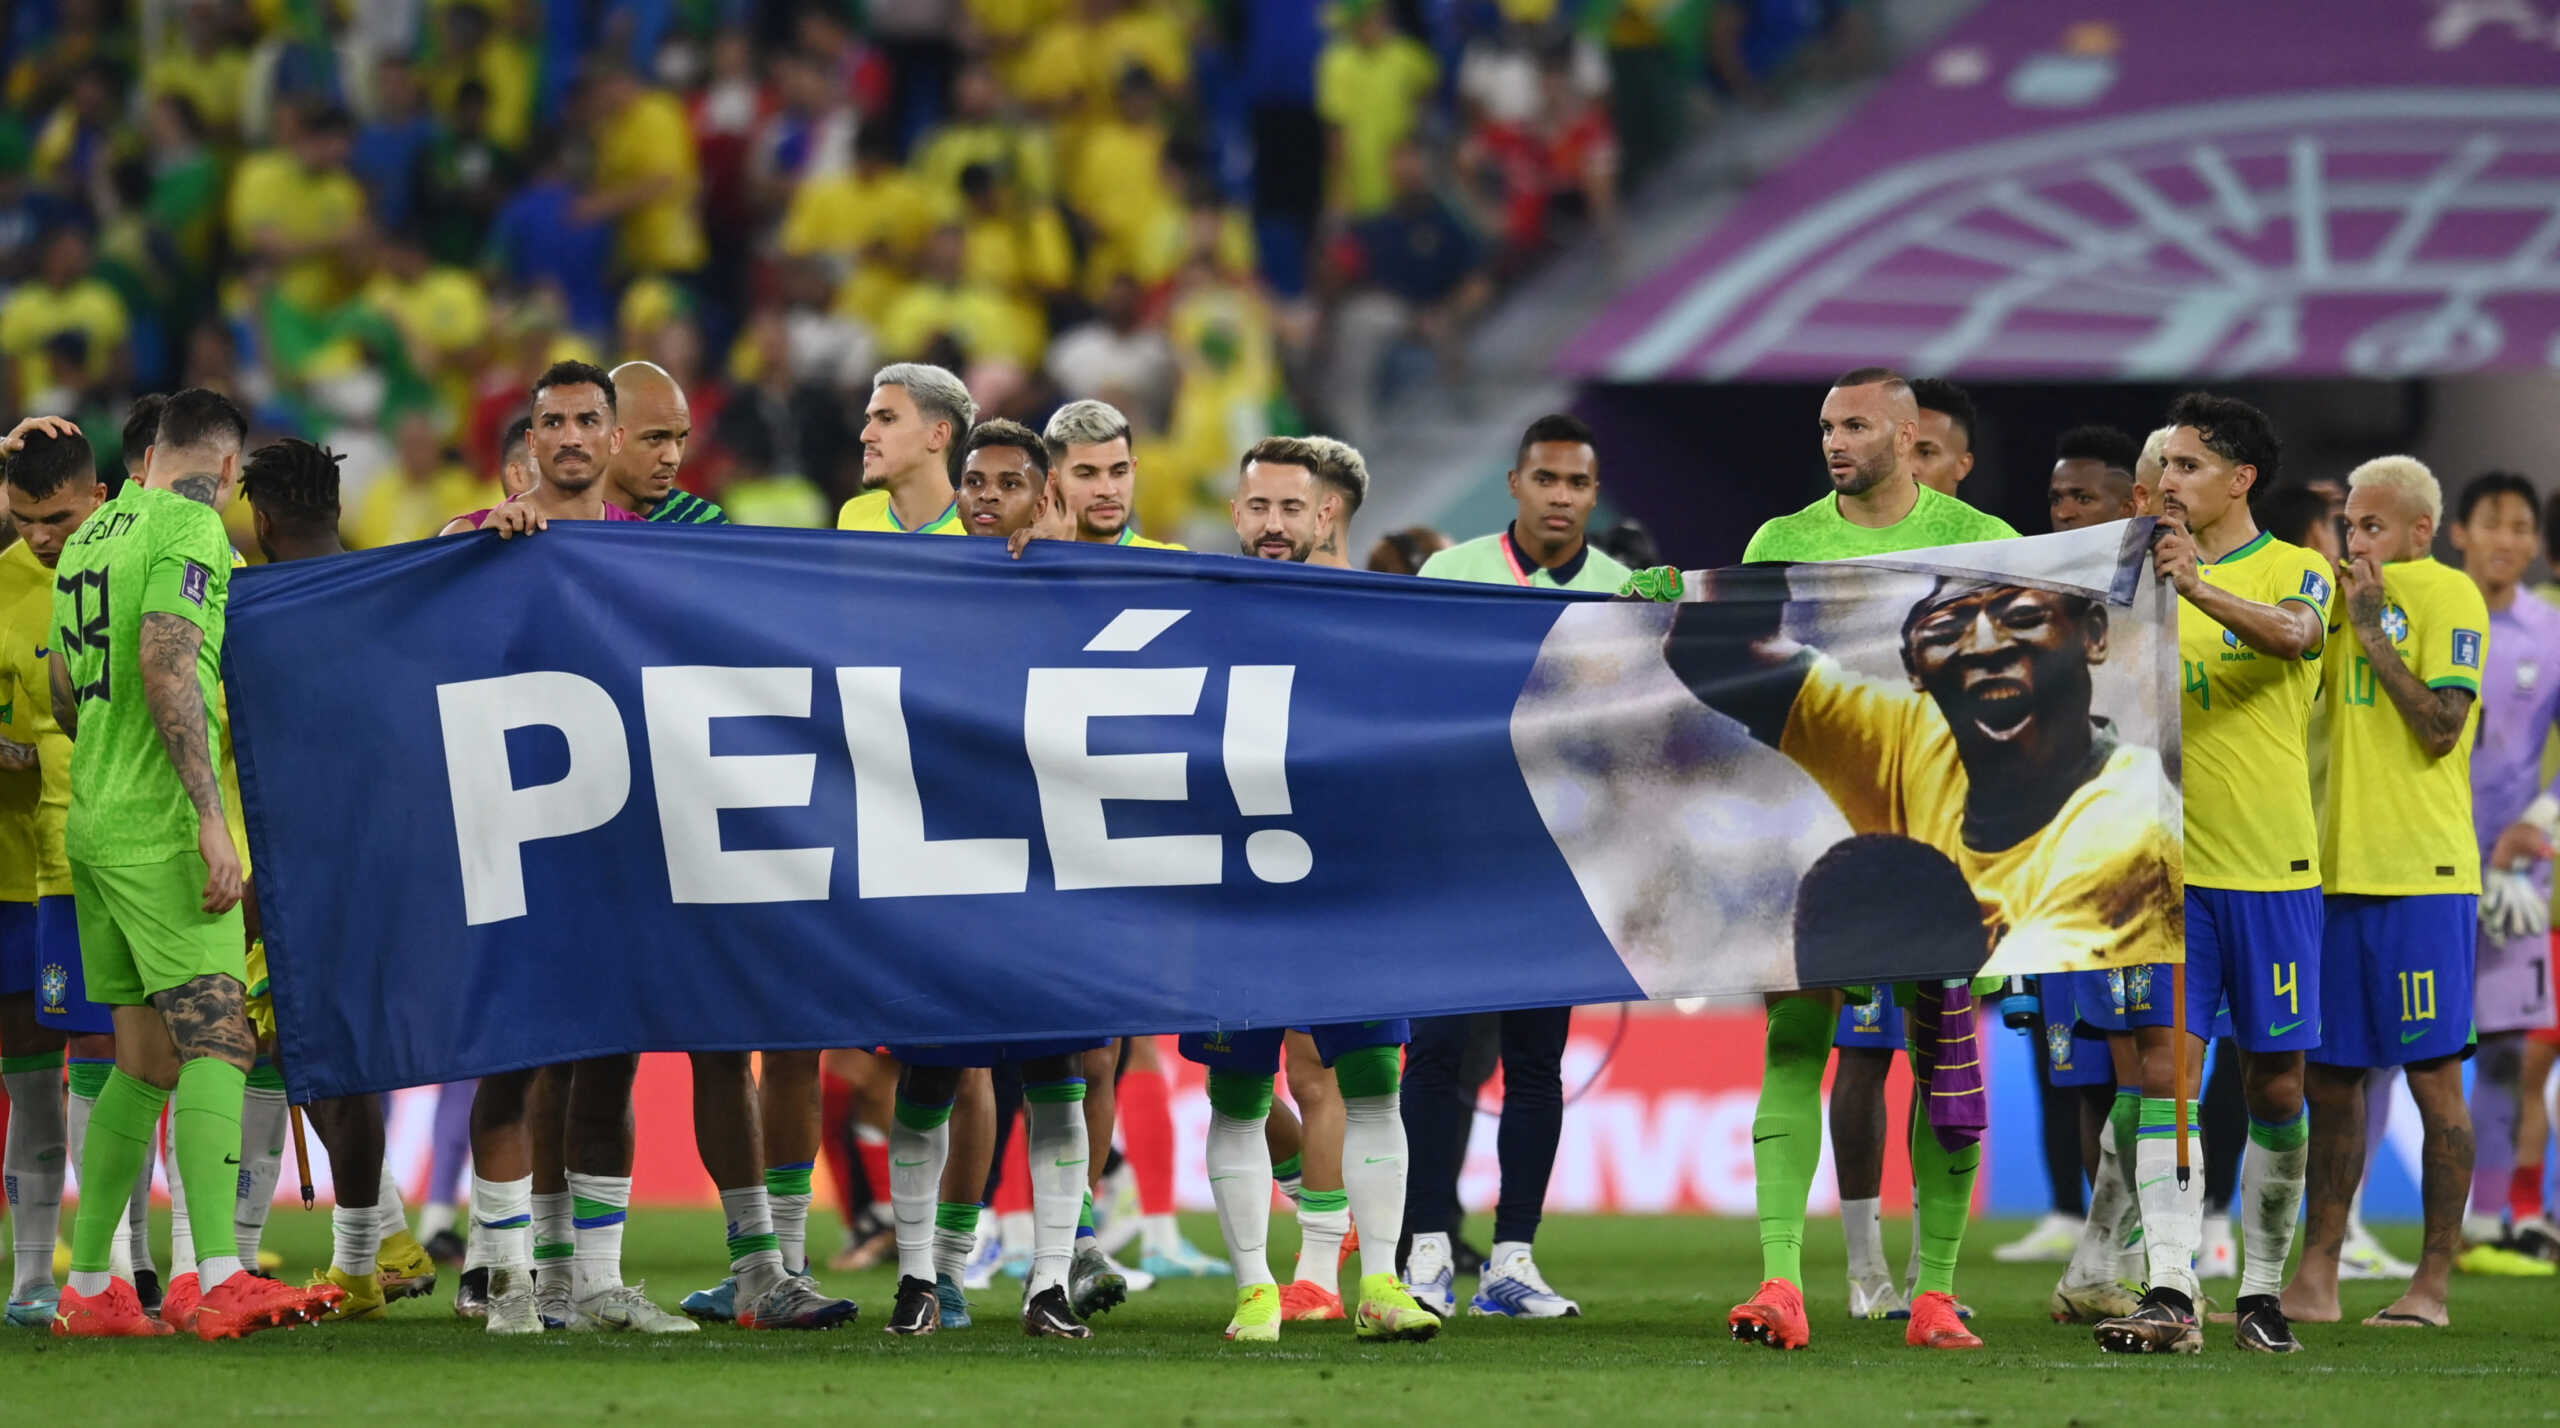 Μουντιάλ 2022: Οι παίκτες της Βραζιλίας πανηγύρισαν με πανό για τον Πελέ